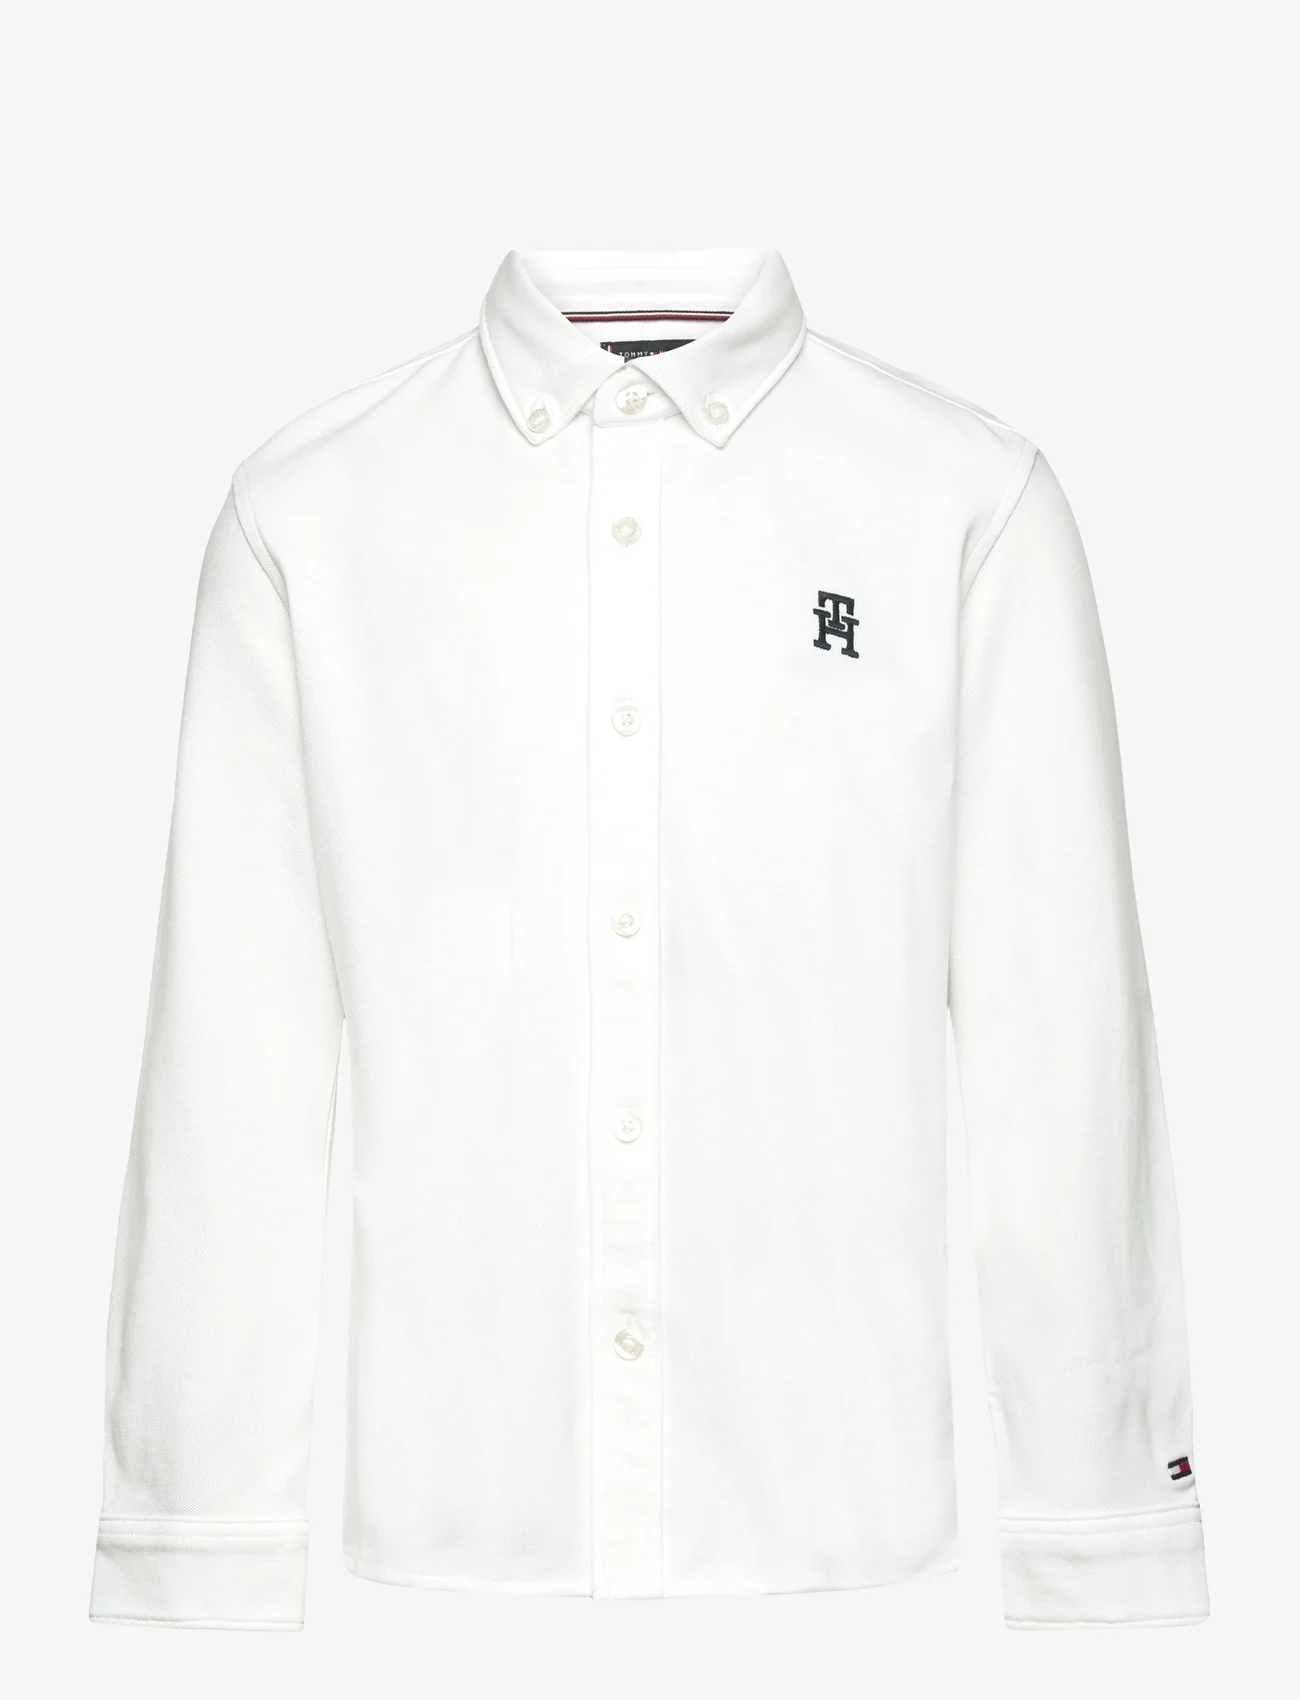 Tommy Hilfiger - MONOGRAM STRETCH PIQUE SHIRT L/S - langærmede skjorter - white - 0